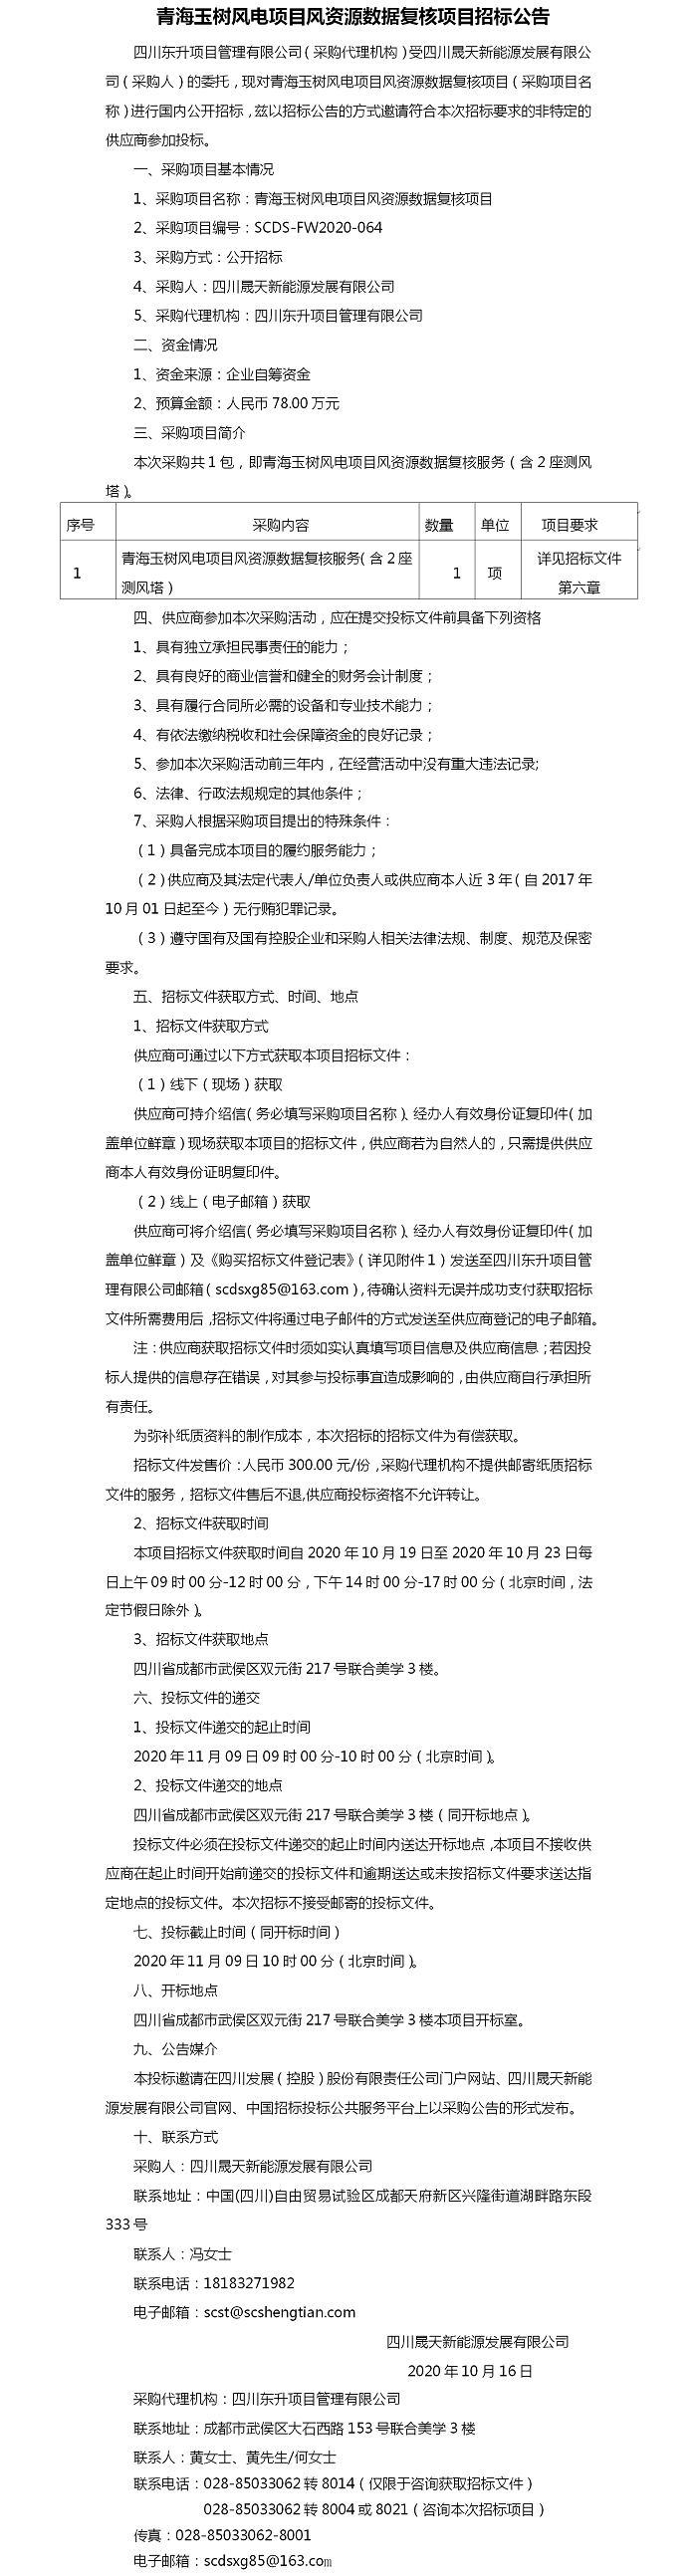 青海玉树风电项目风资源数据复核项目招标公告.png